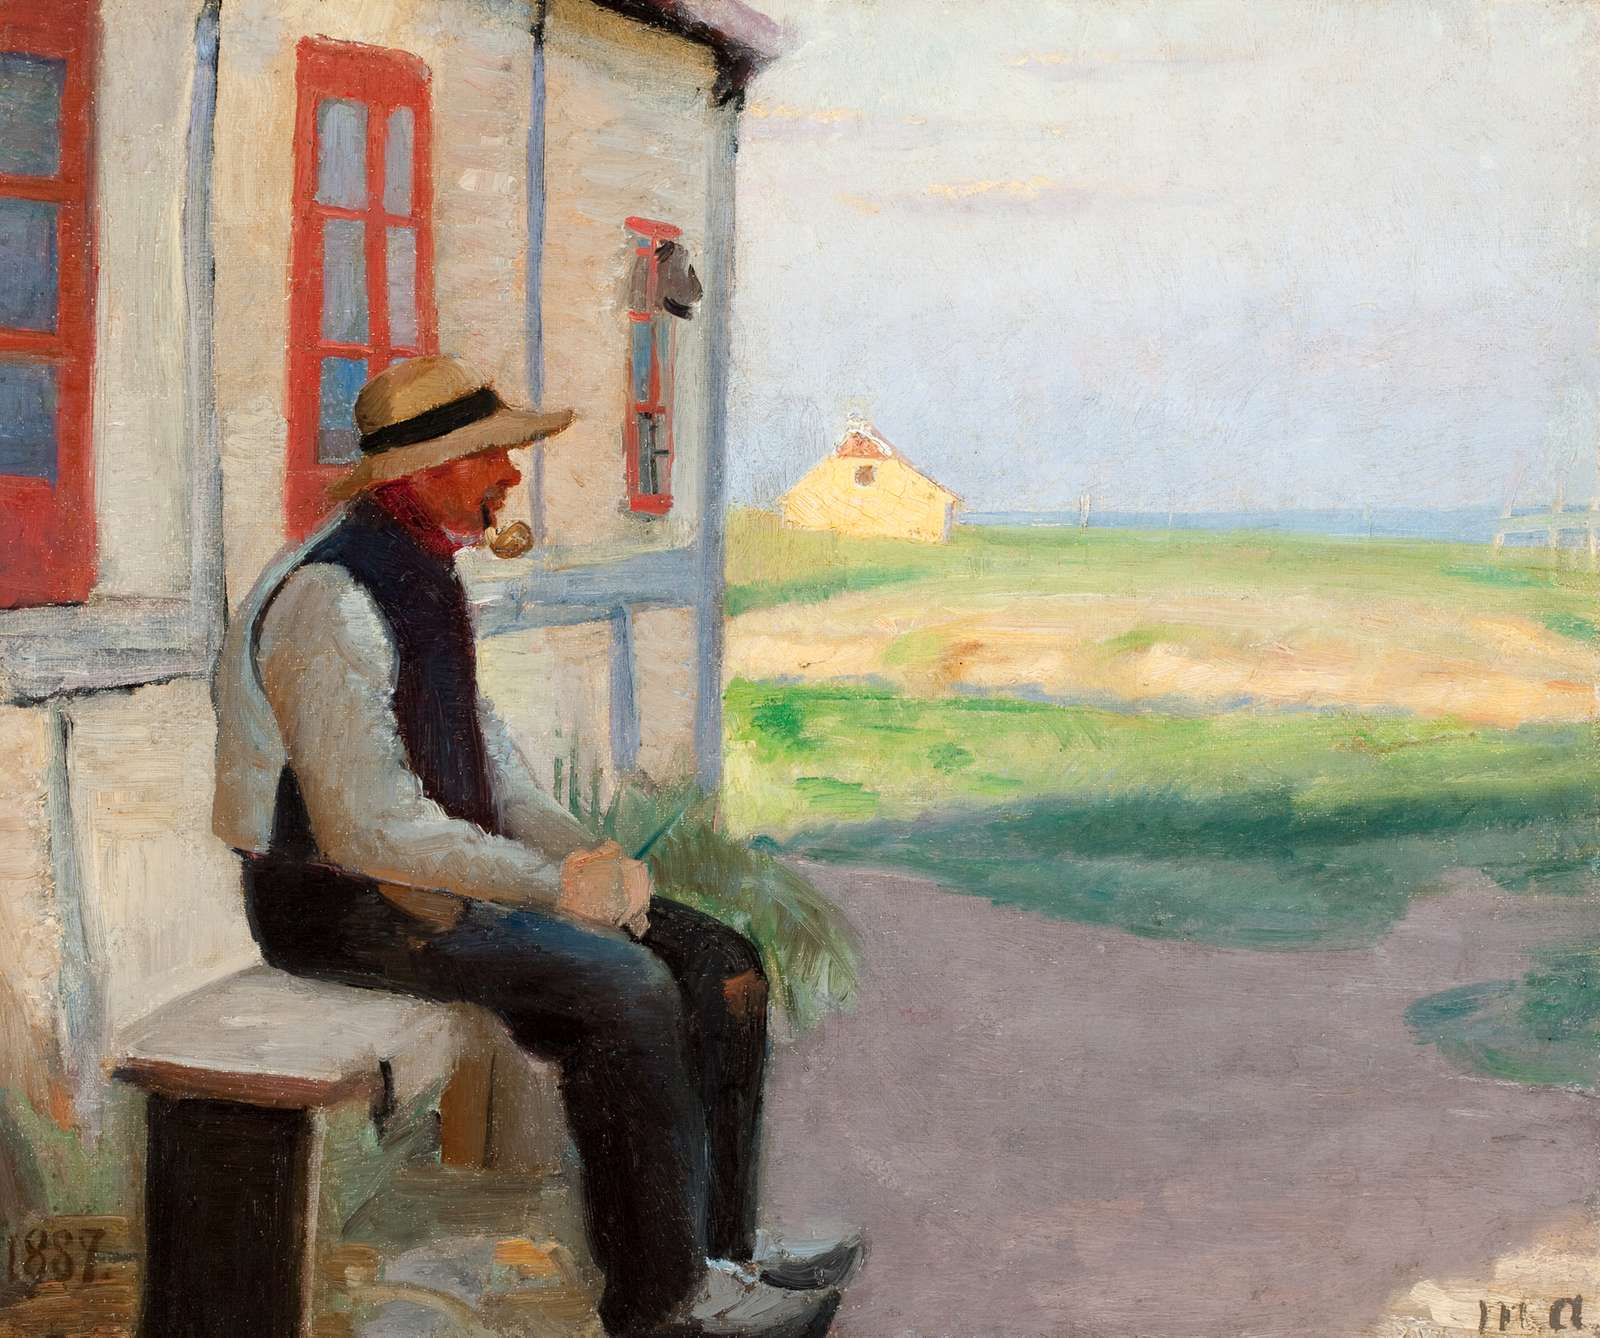 Michael Ancher: ” Fisker Niels Gaihede udenfor sit hus i Skagen Østerby”. 1887